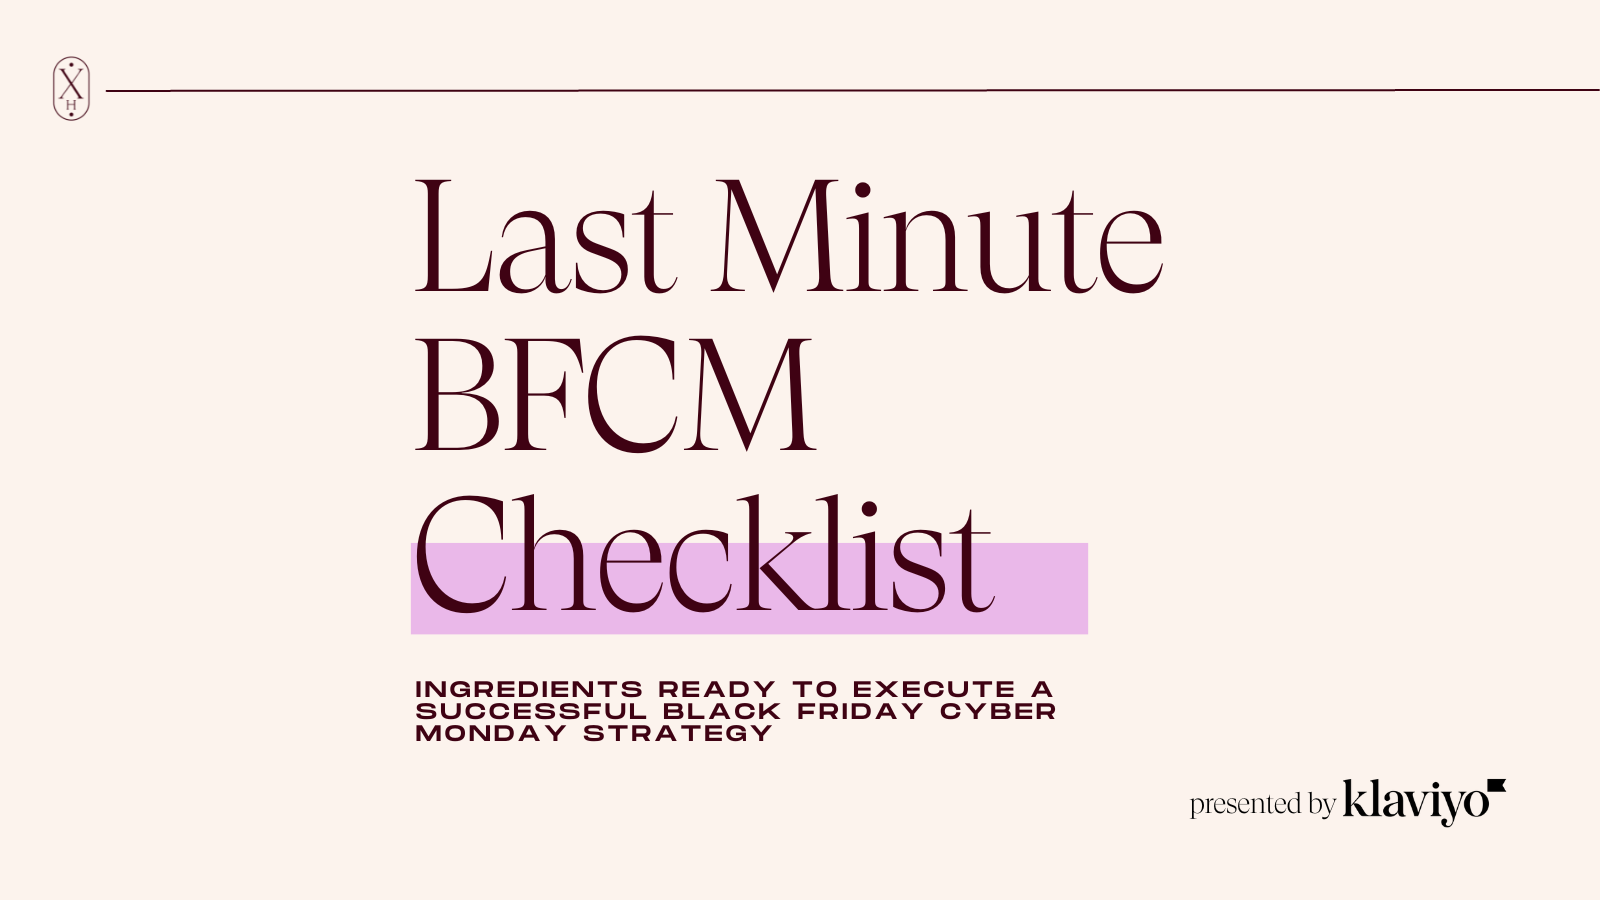 BFCM checklist